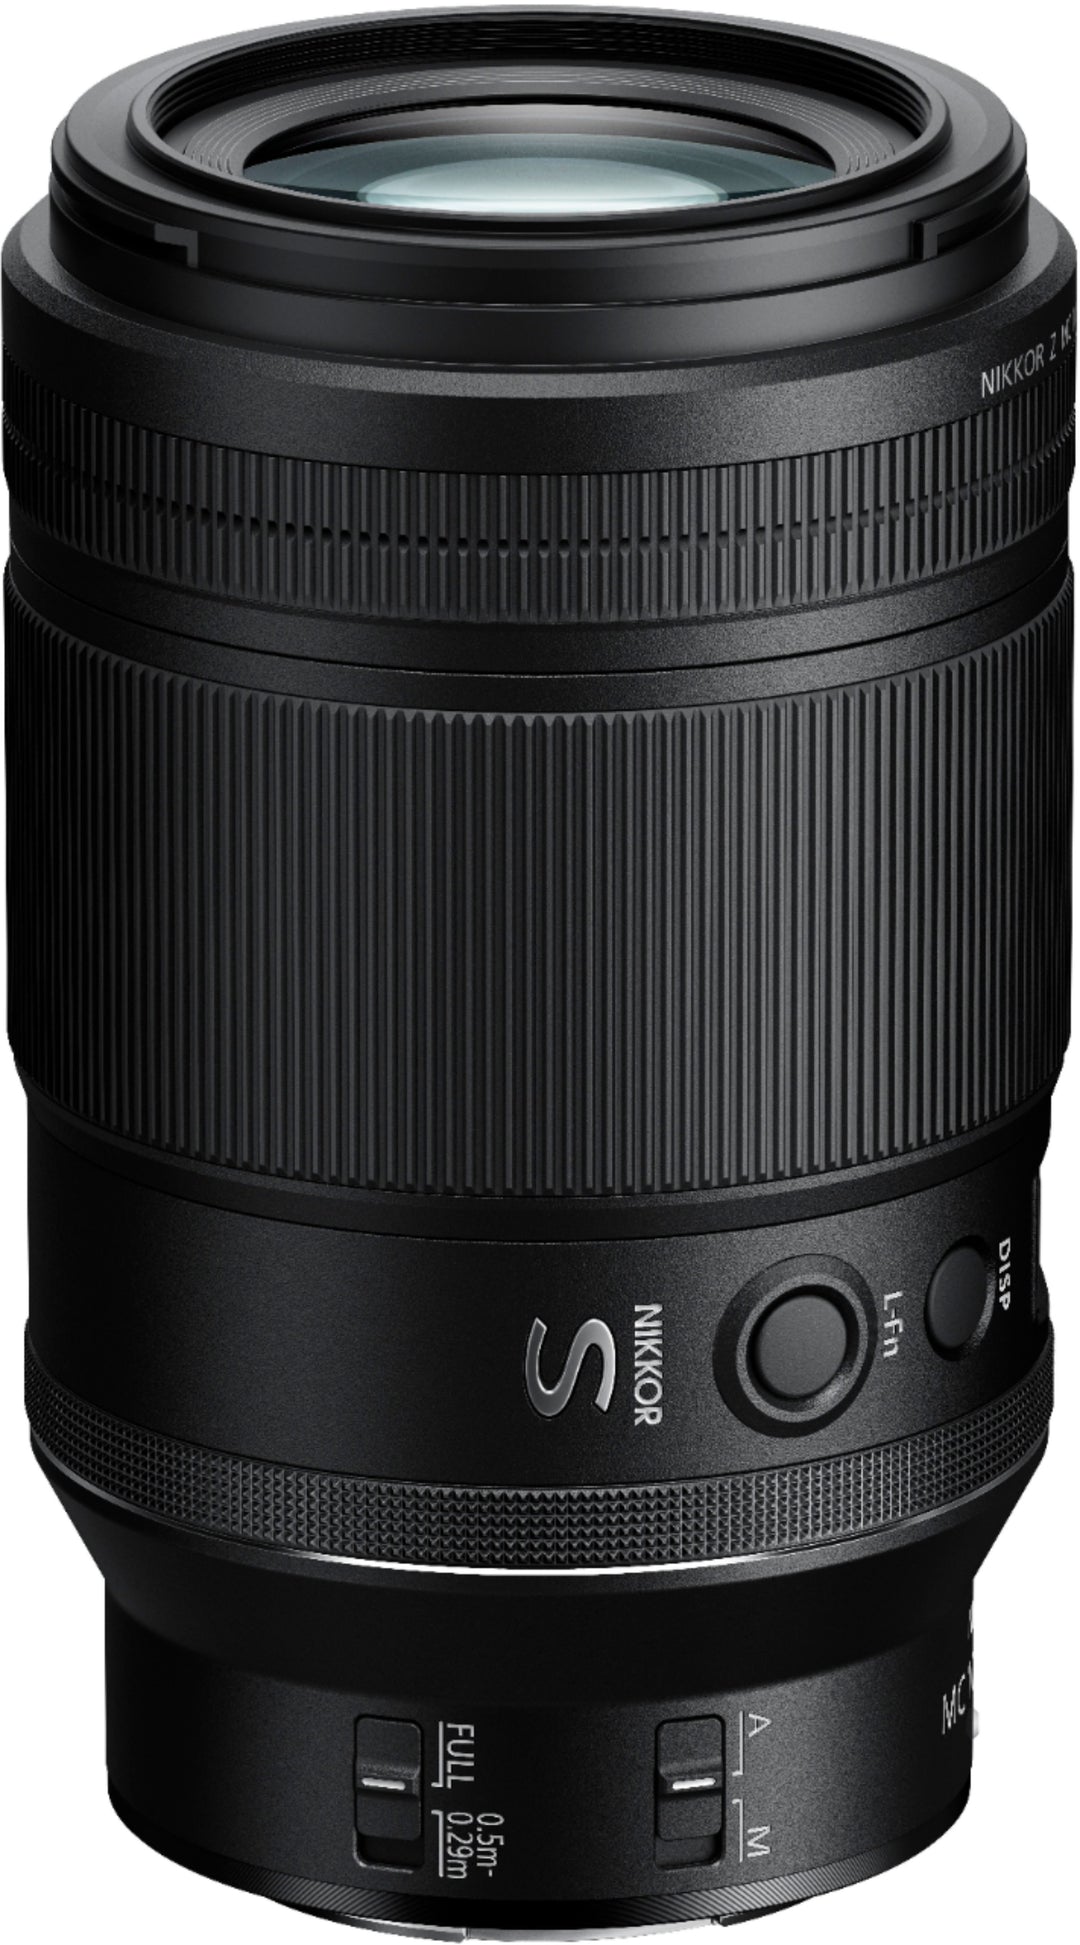 Nikon - NIKKOR Z MC 105mm f/2.8 VR S Macro Lens for Z Series Mirrorless Cameras_2